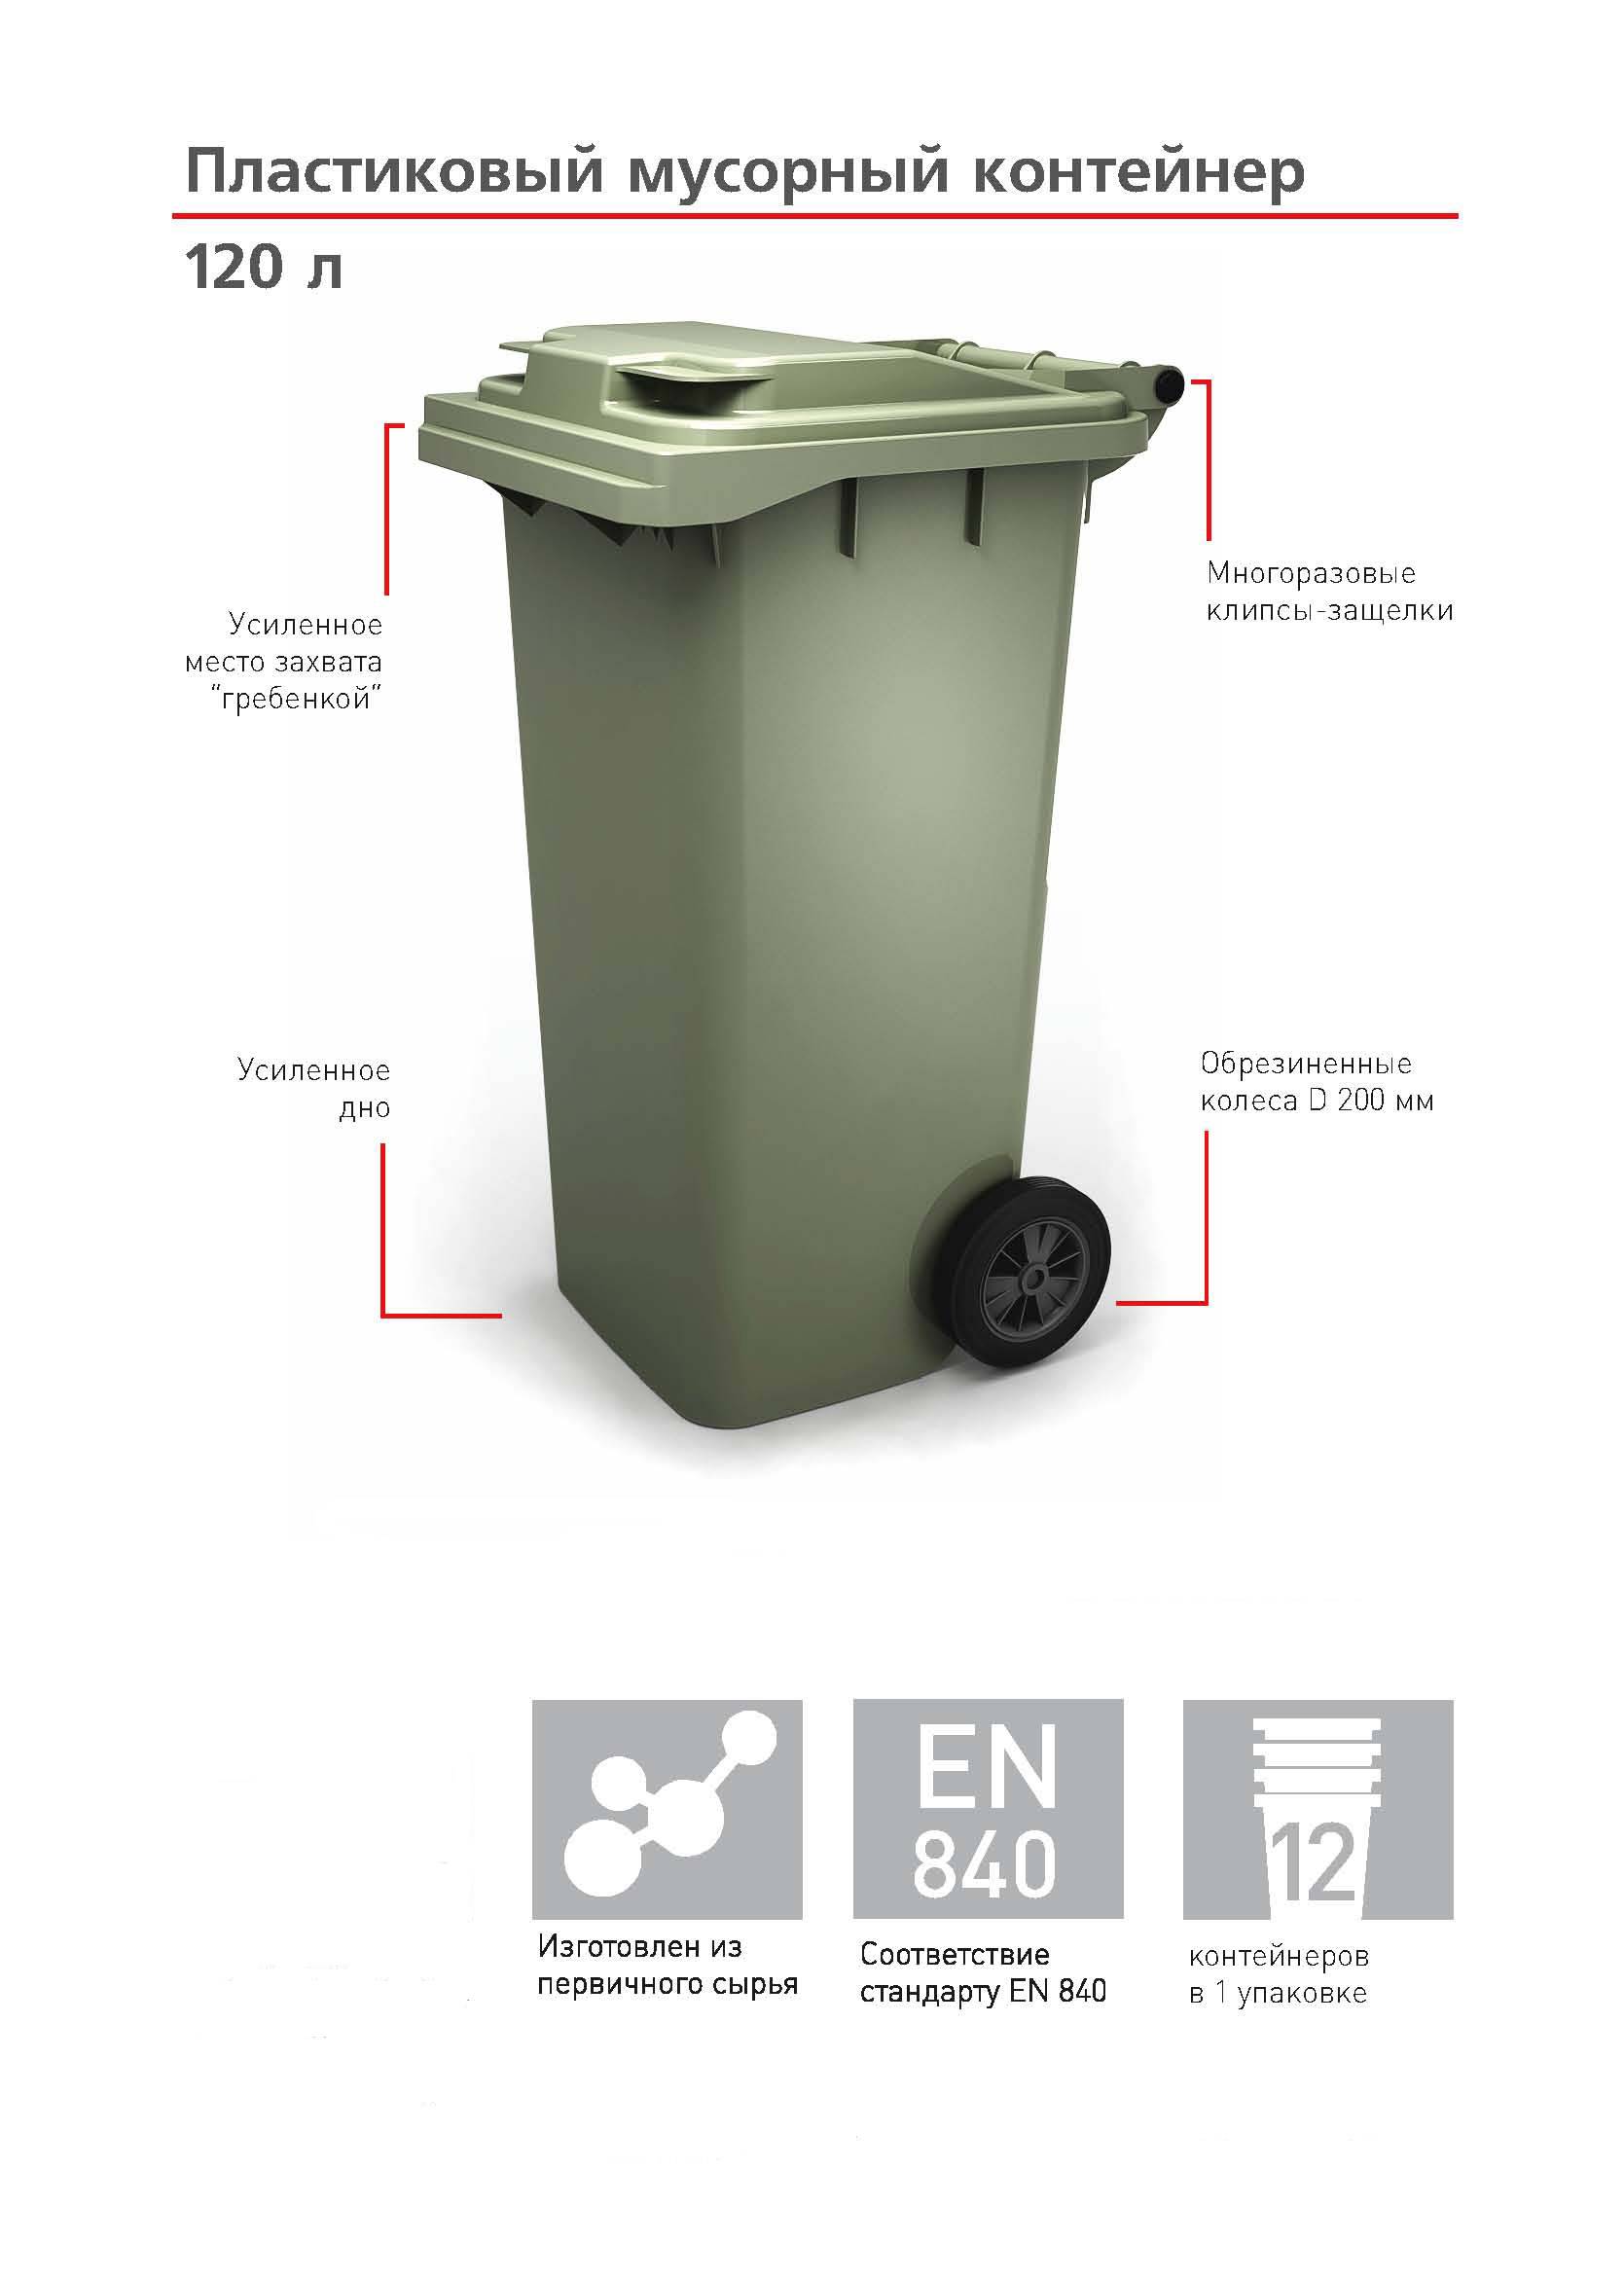 Ост 22-1643-85 "мусоросборники и контейнеры металлические для бытового мусора и пищевых отходов. общие технические условия"